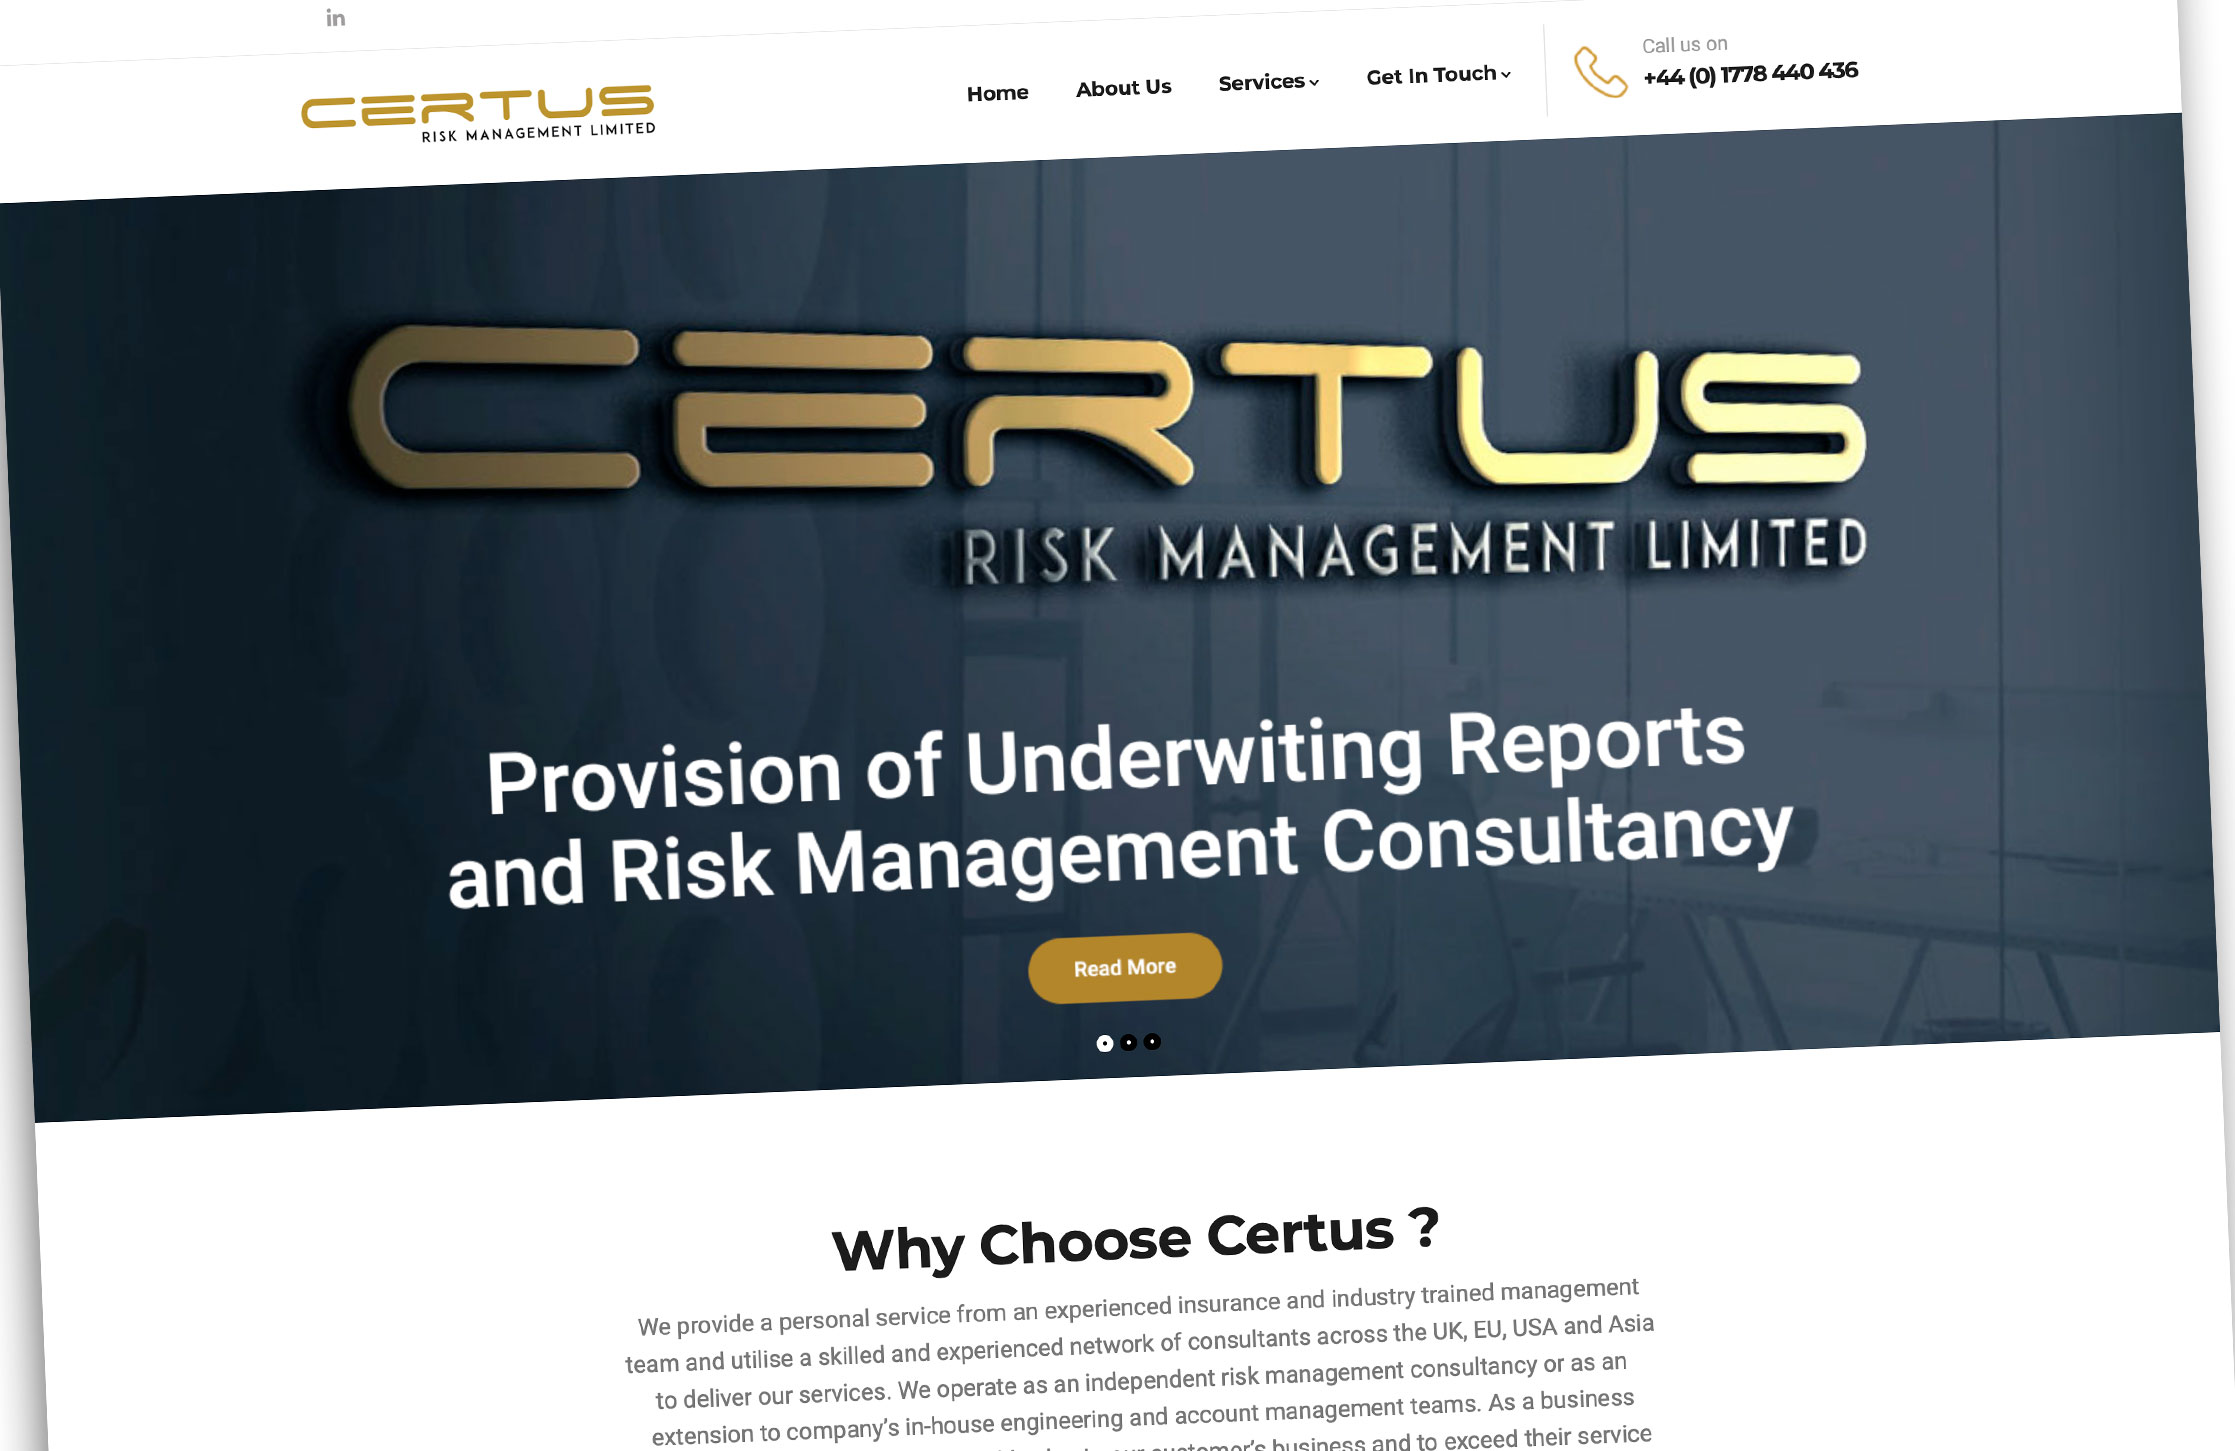 Certus Risk Management - Bringing Certainty to Risk Management